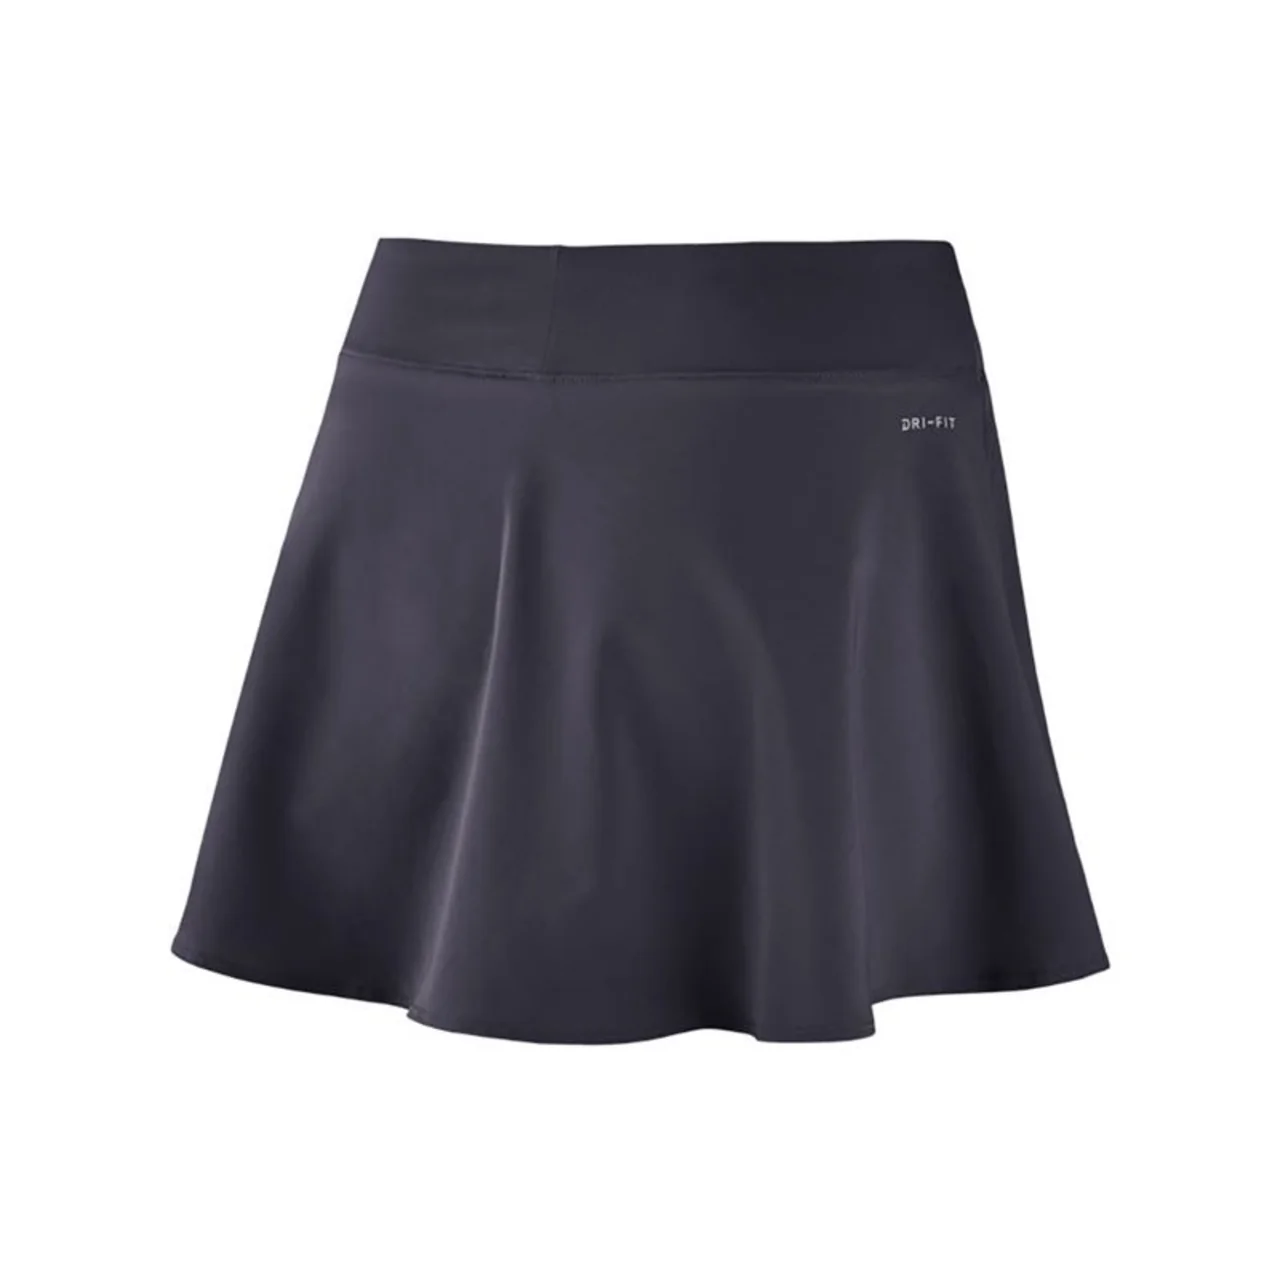 Nike Flex Flouncy Skirt Gridiron/White